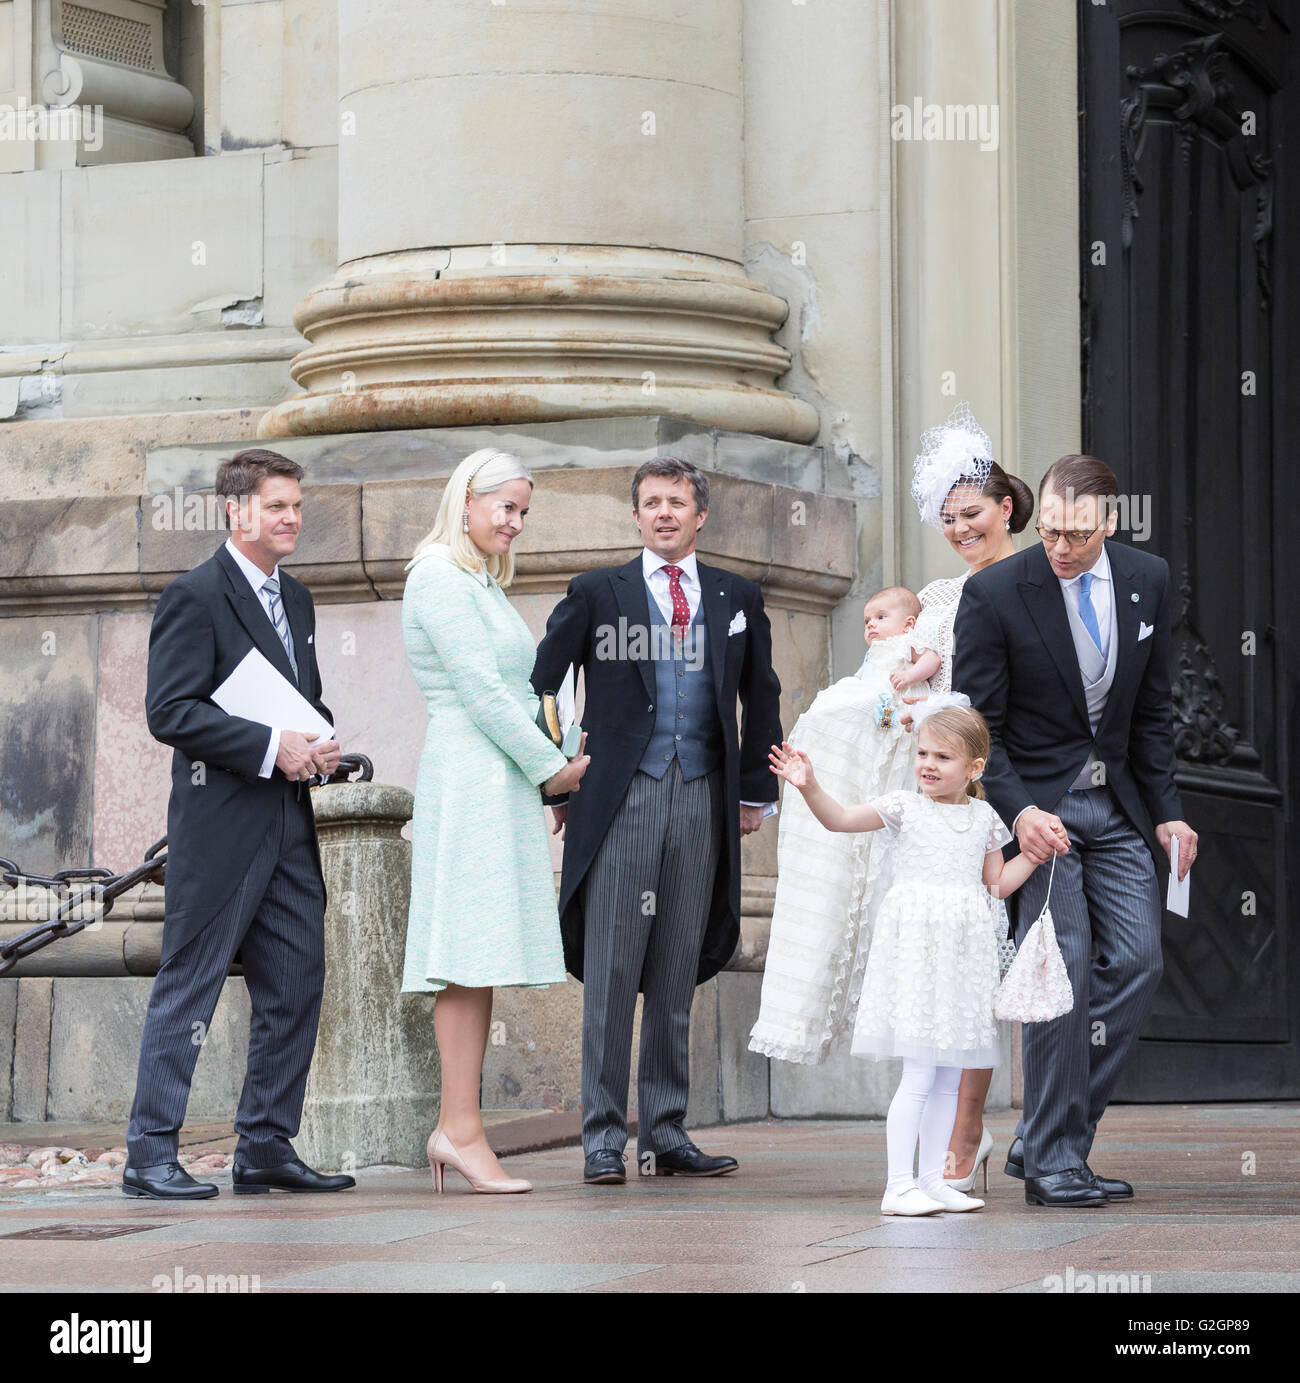 Königliche Taufe in Schweden Mai 2016 – Prinz Oscar von Schweden. Prinzessin Estelle Wellen Stockfoto